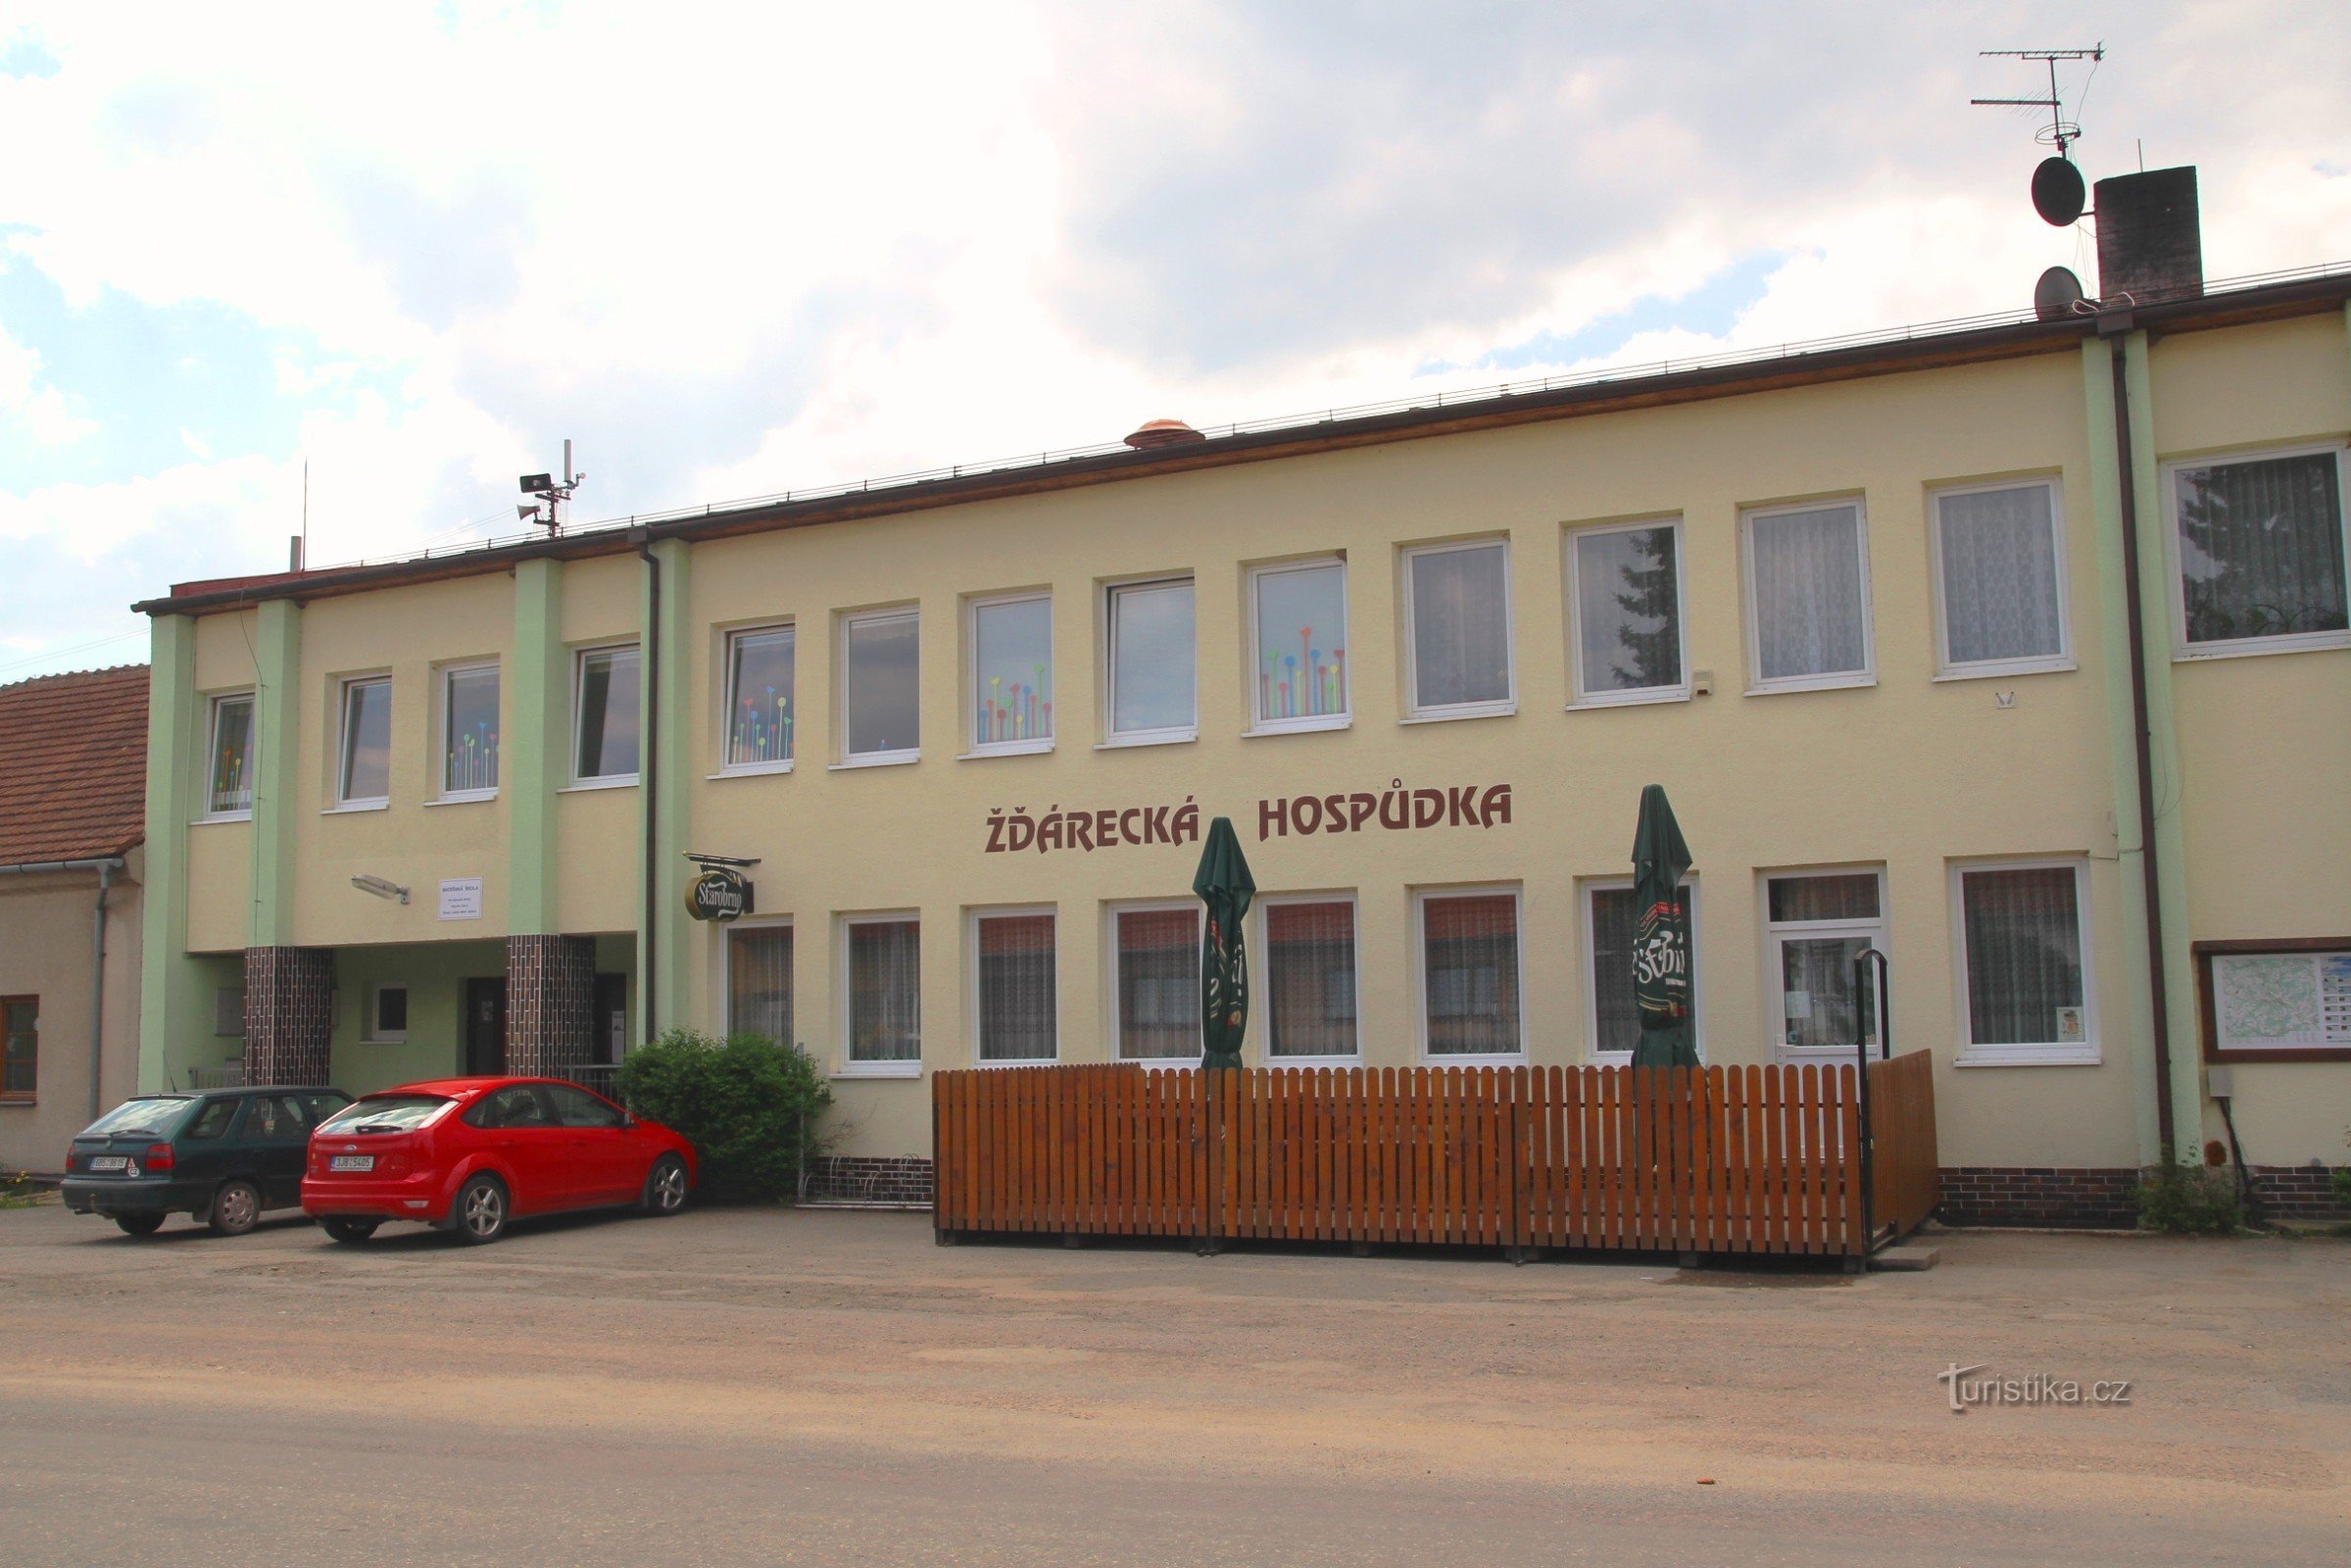 Žďárecká-pubi sijaitsee lähellä bussipysäkkiä